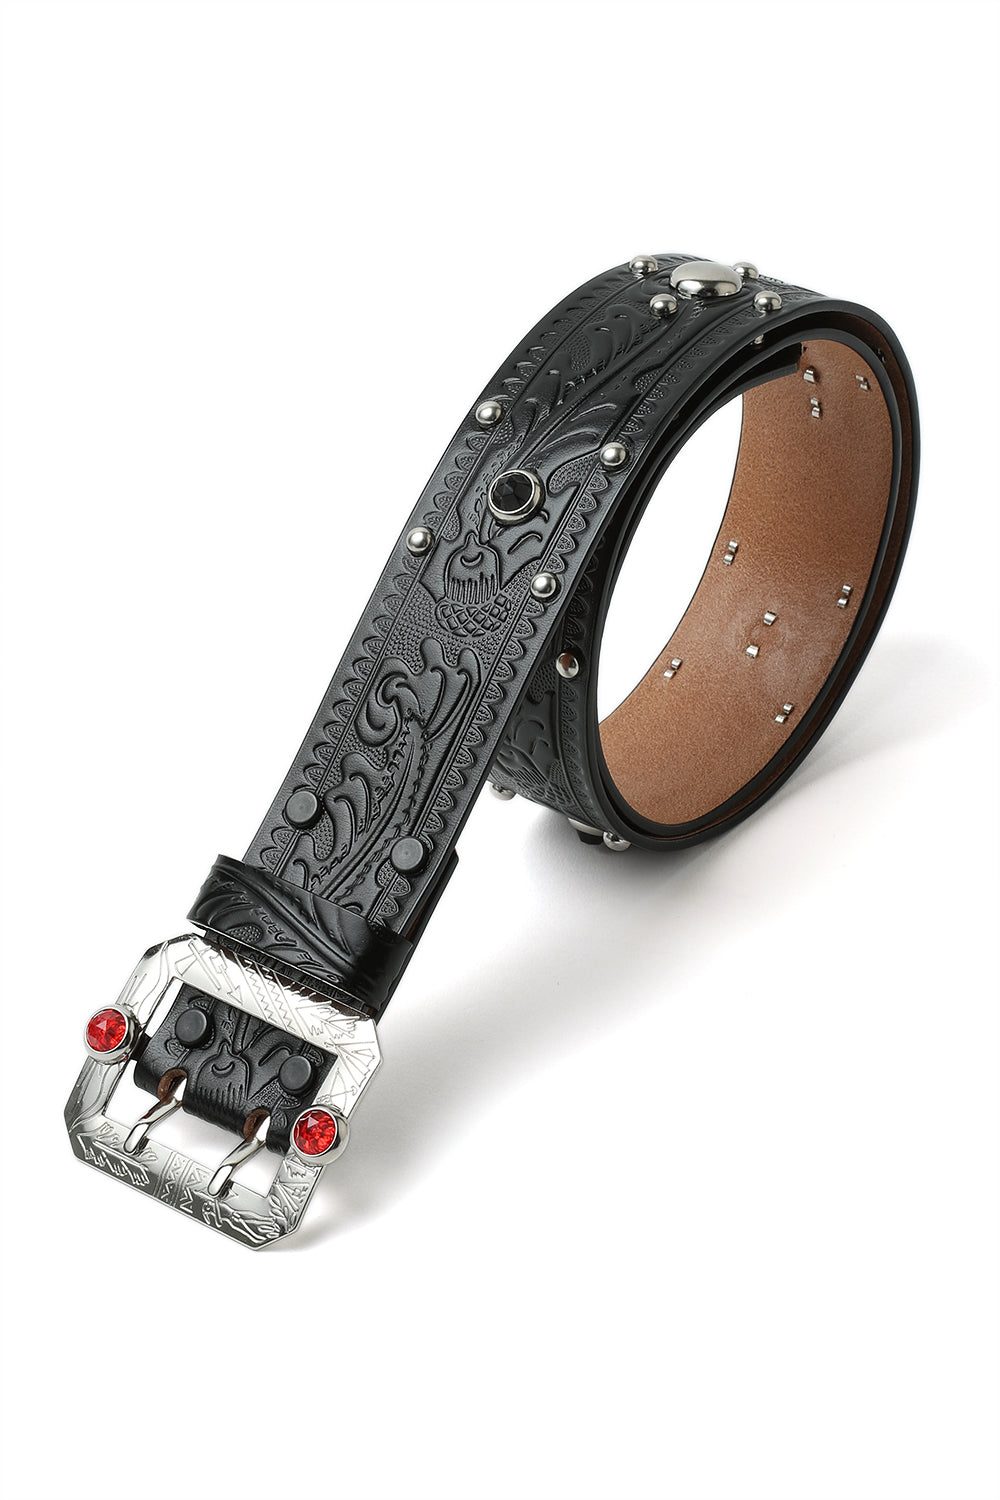 A20032 Studded and Jeweled Belt -Black-